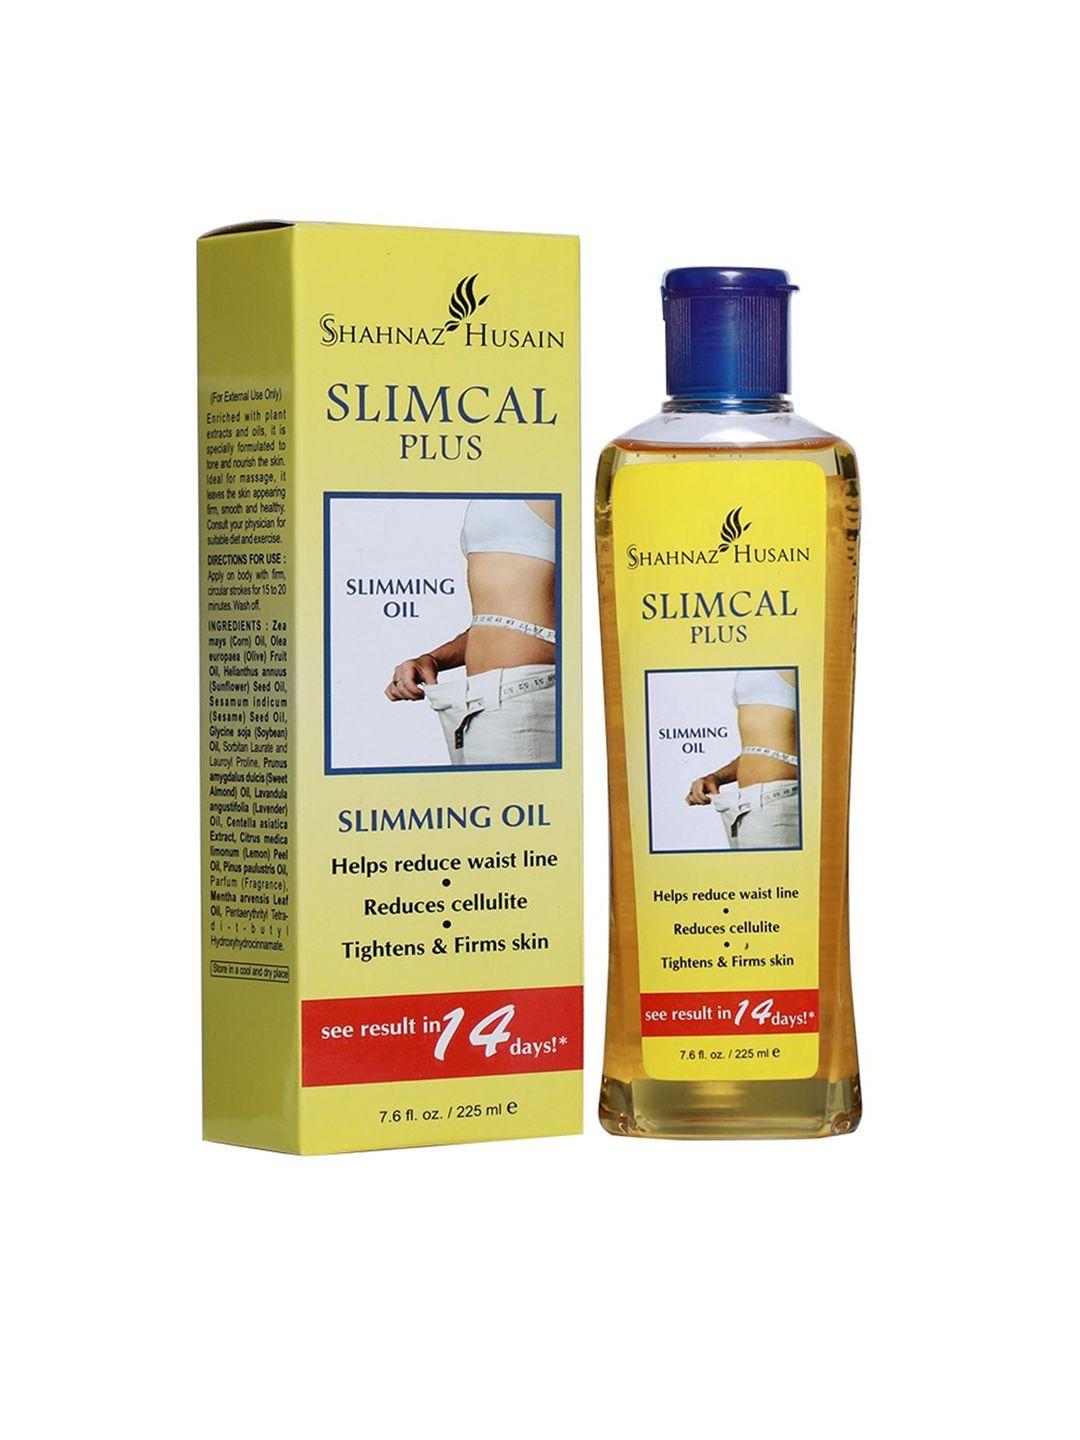 shahnaz husain slimcal plus slimming oil 225 ml